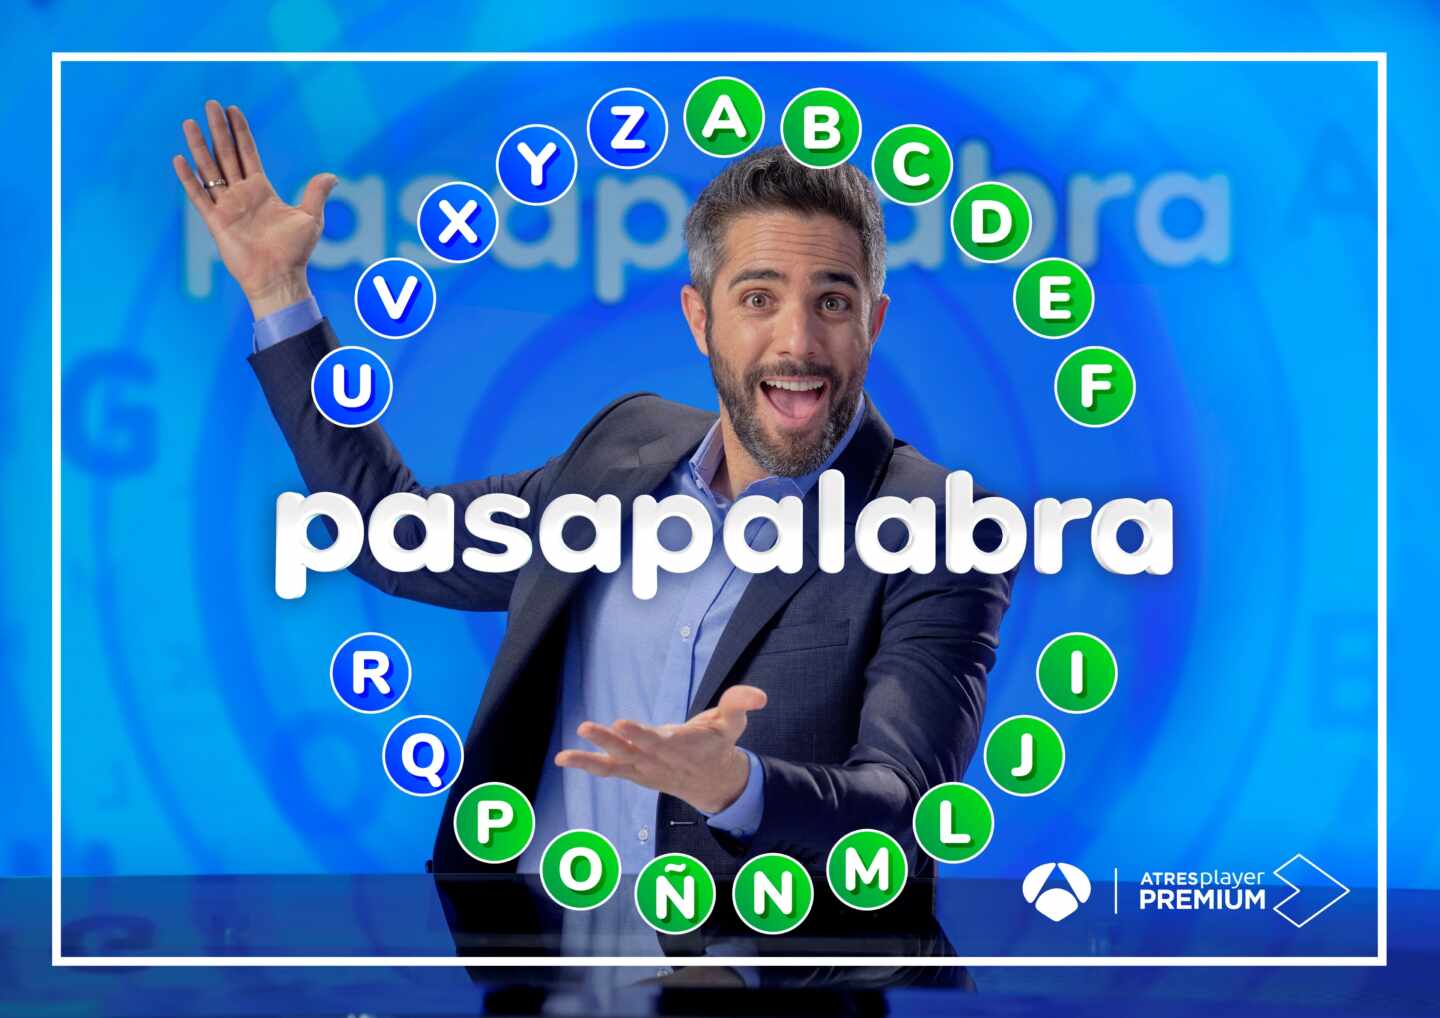 'Pasapalabra' regresa a Antena 3 con Alaska, Mario Vaquerizo, Manel Fuentes y Chenoa como invitados